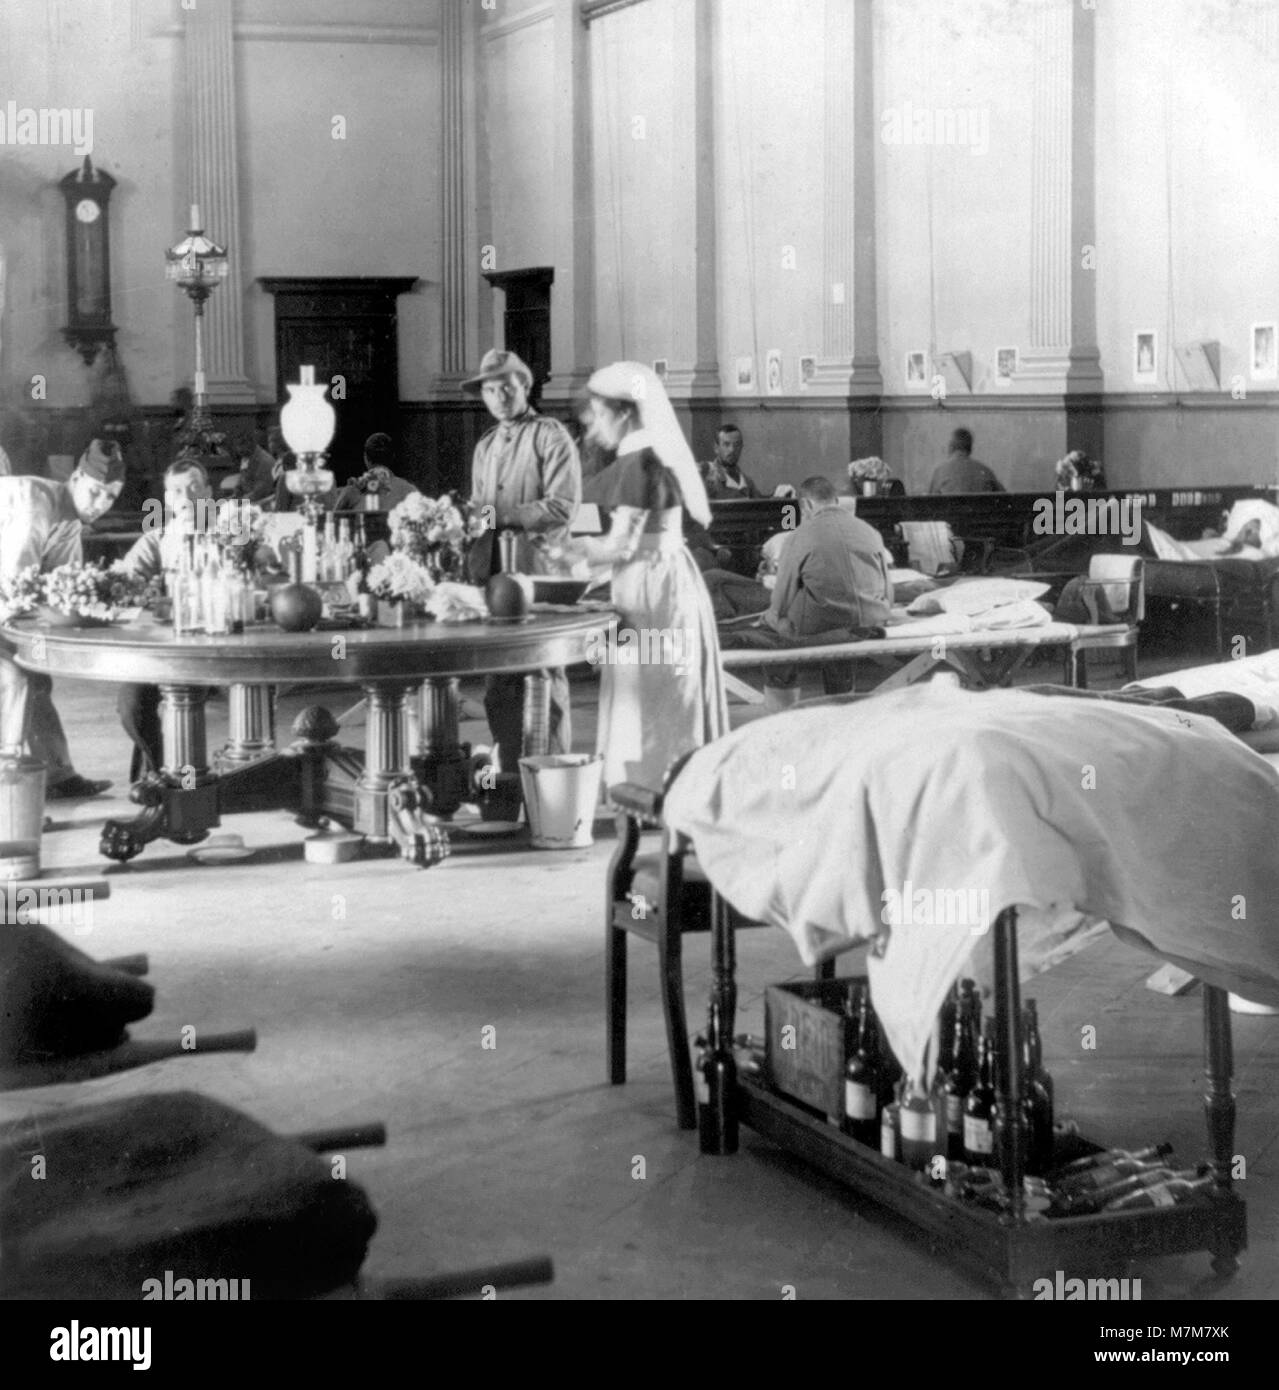 Guerra Boera. Le truppe britanniche in trattamento presso l'Hopital, Raadzaal, Bloemfontein, Sud Africa, durante la Seconda guerra boera (1899-1902). Foto da Keystone, c.1900 Foto Stock